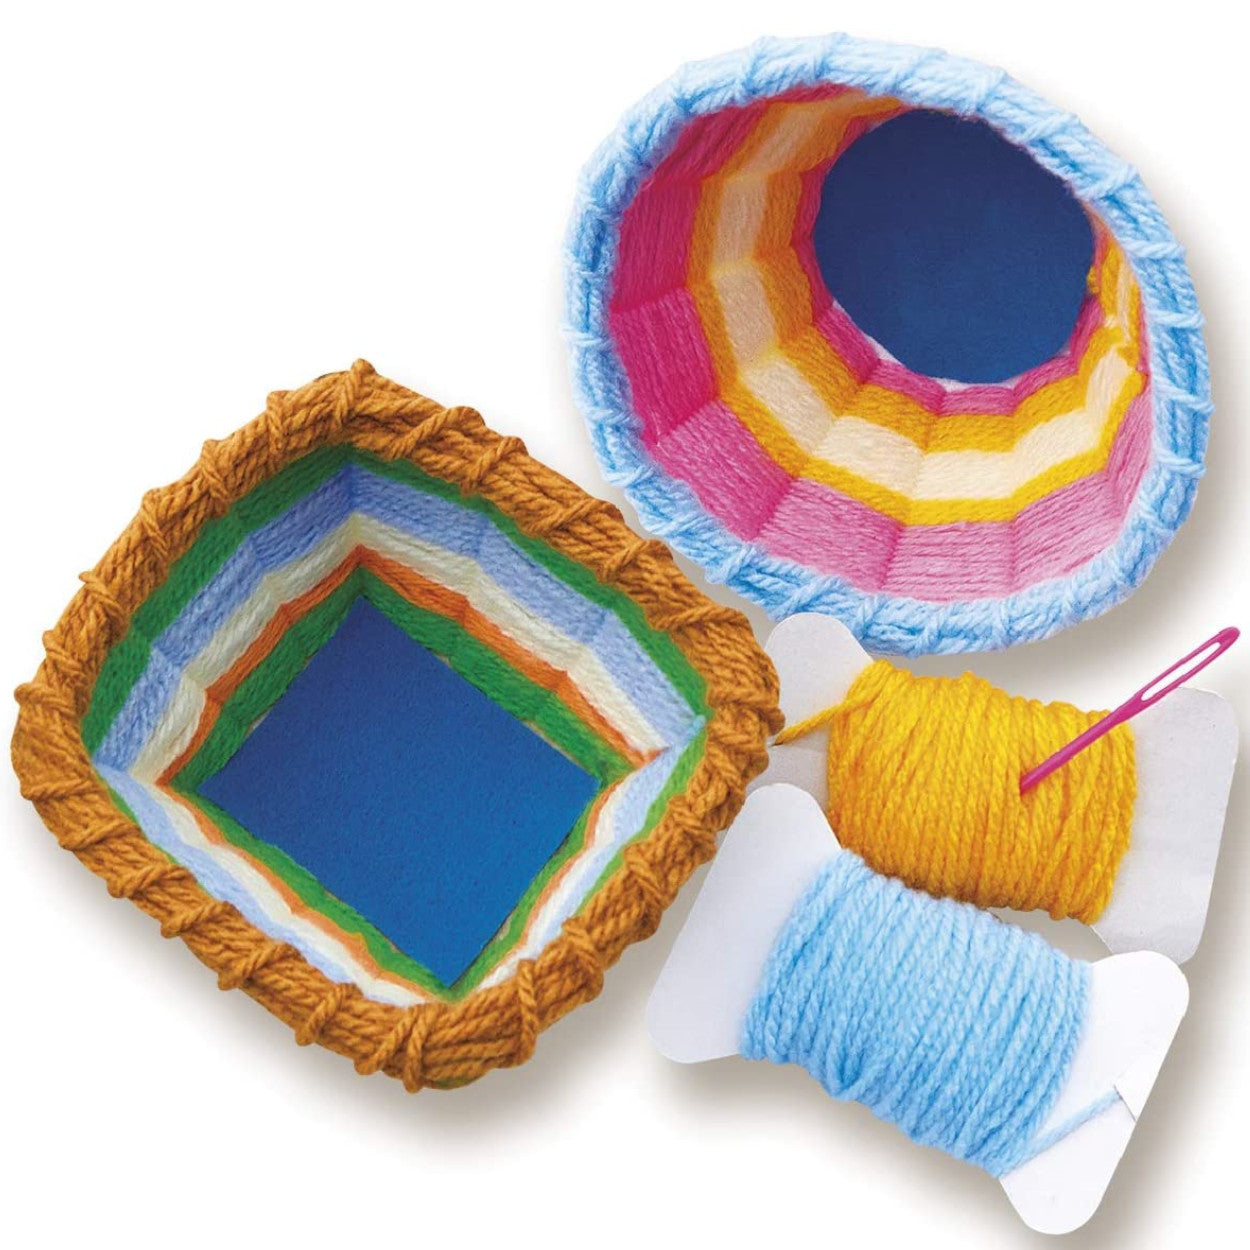 4M KidzMaker Yarn Basket Weaving Art 1